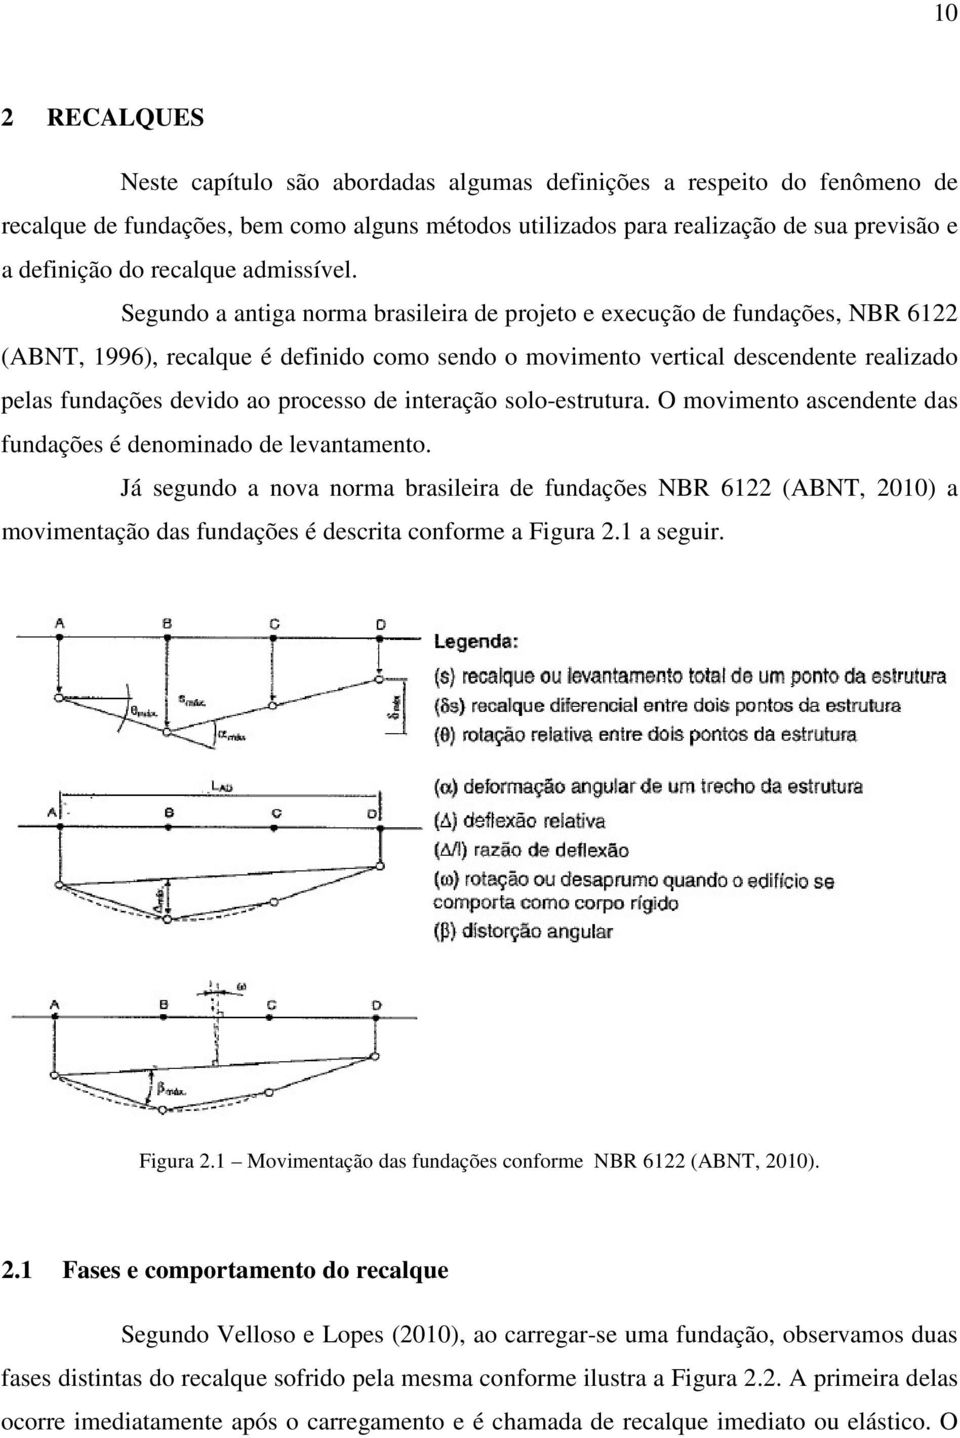 Segundo a antiga norma brasileira de projeto e execução de fundações, NBR 6122 (ABNT, 1996), recalque é definido como sendo o movimento vertical descendente realizado pelas fundações devido ao